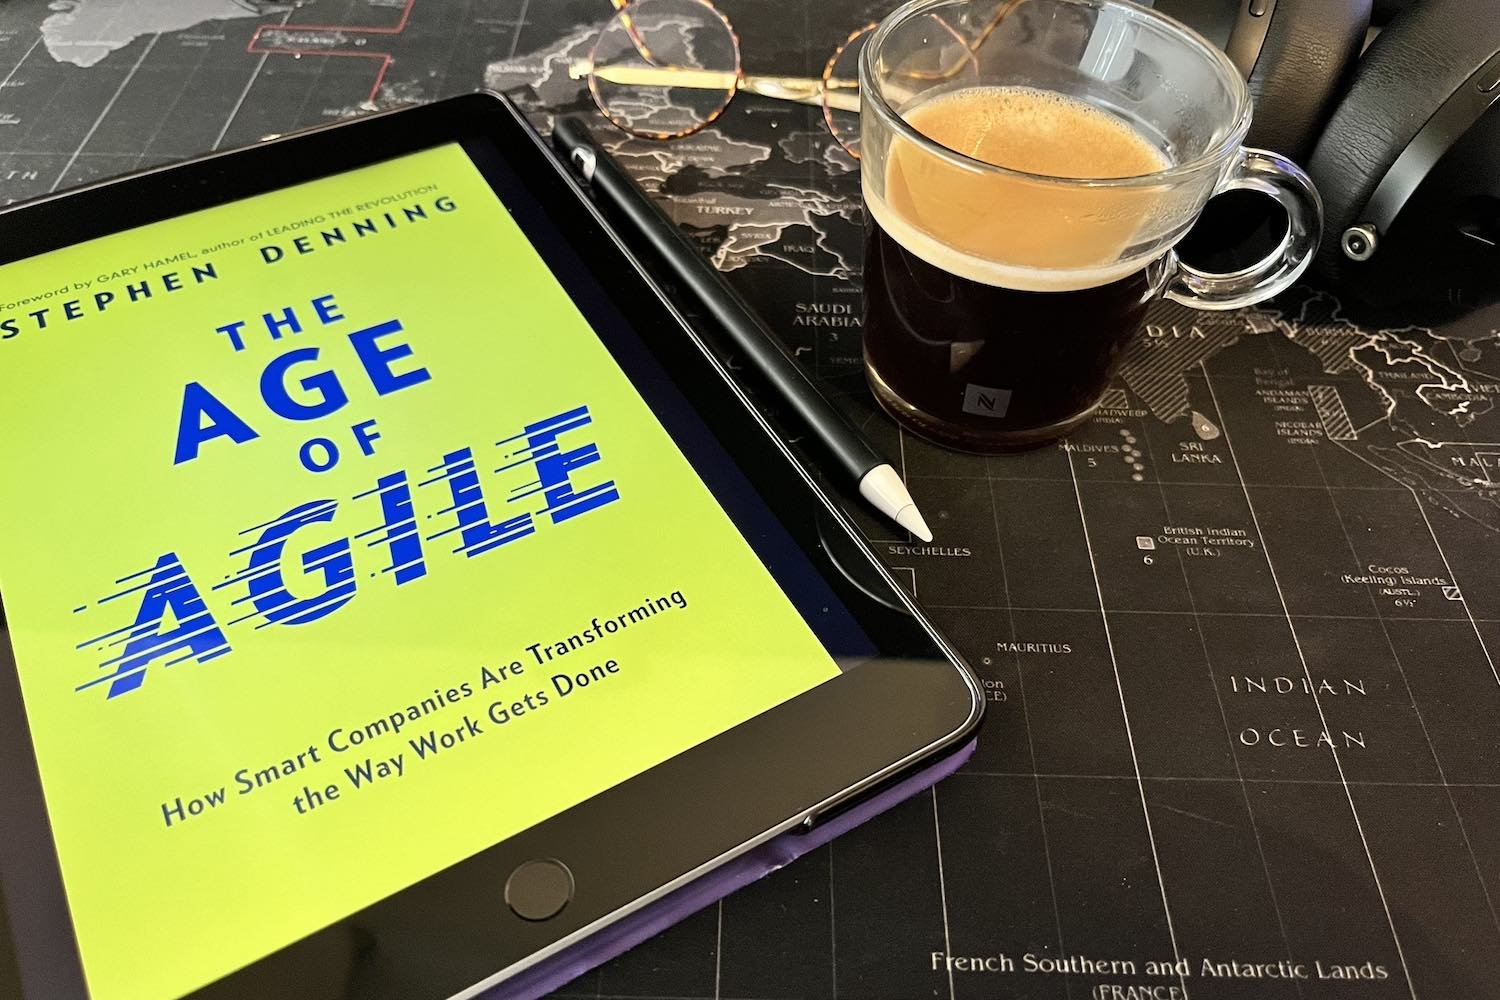 The age of agile